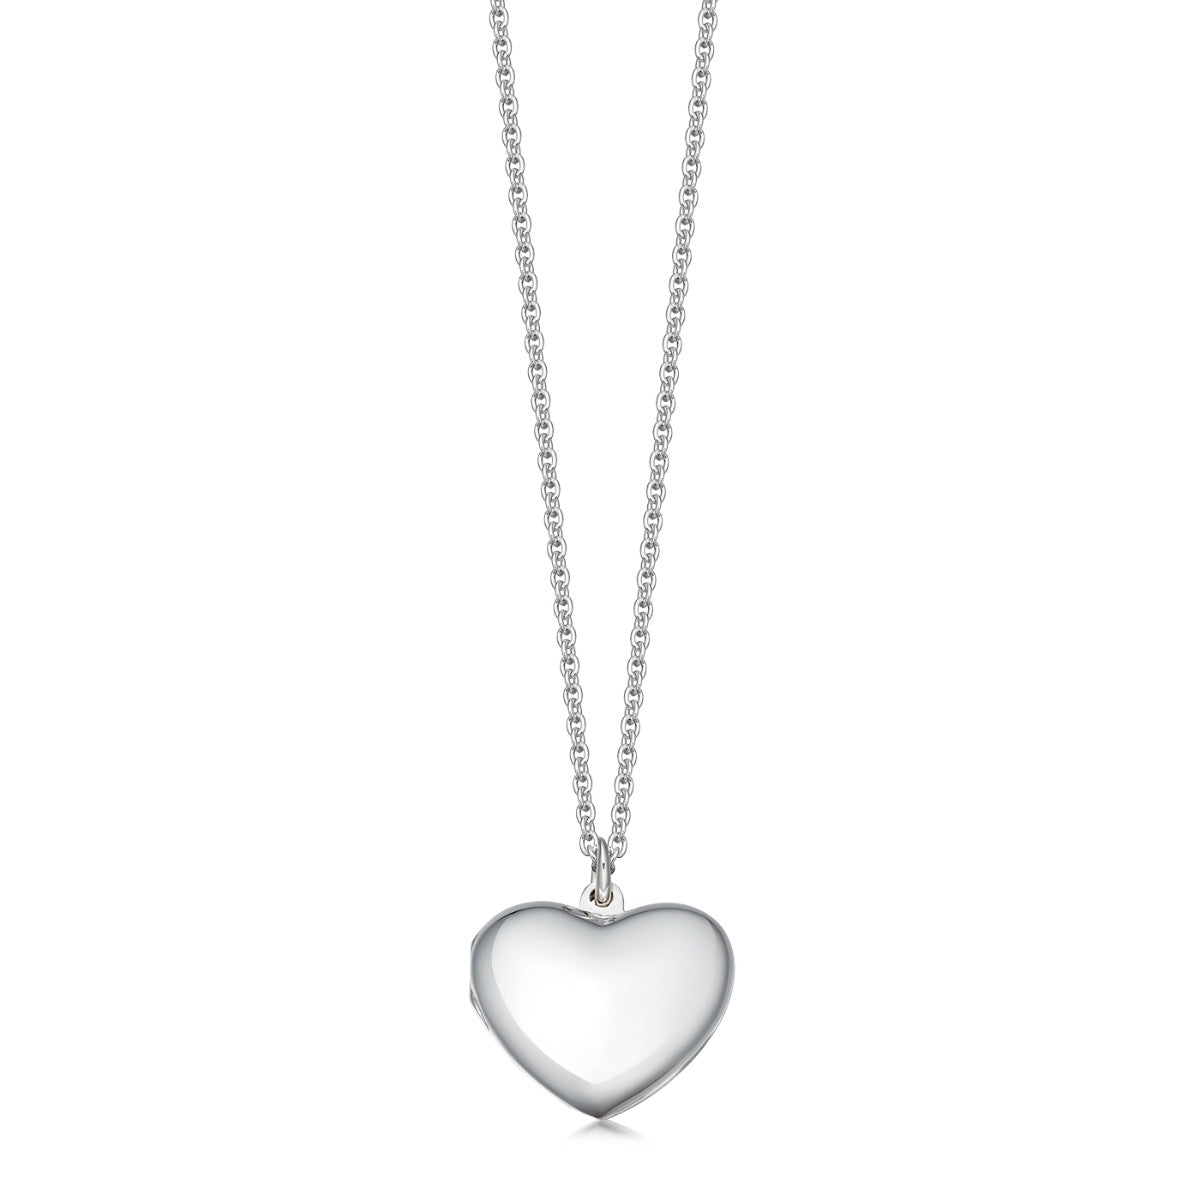 Silver heart shaped locket